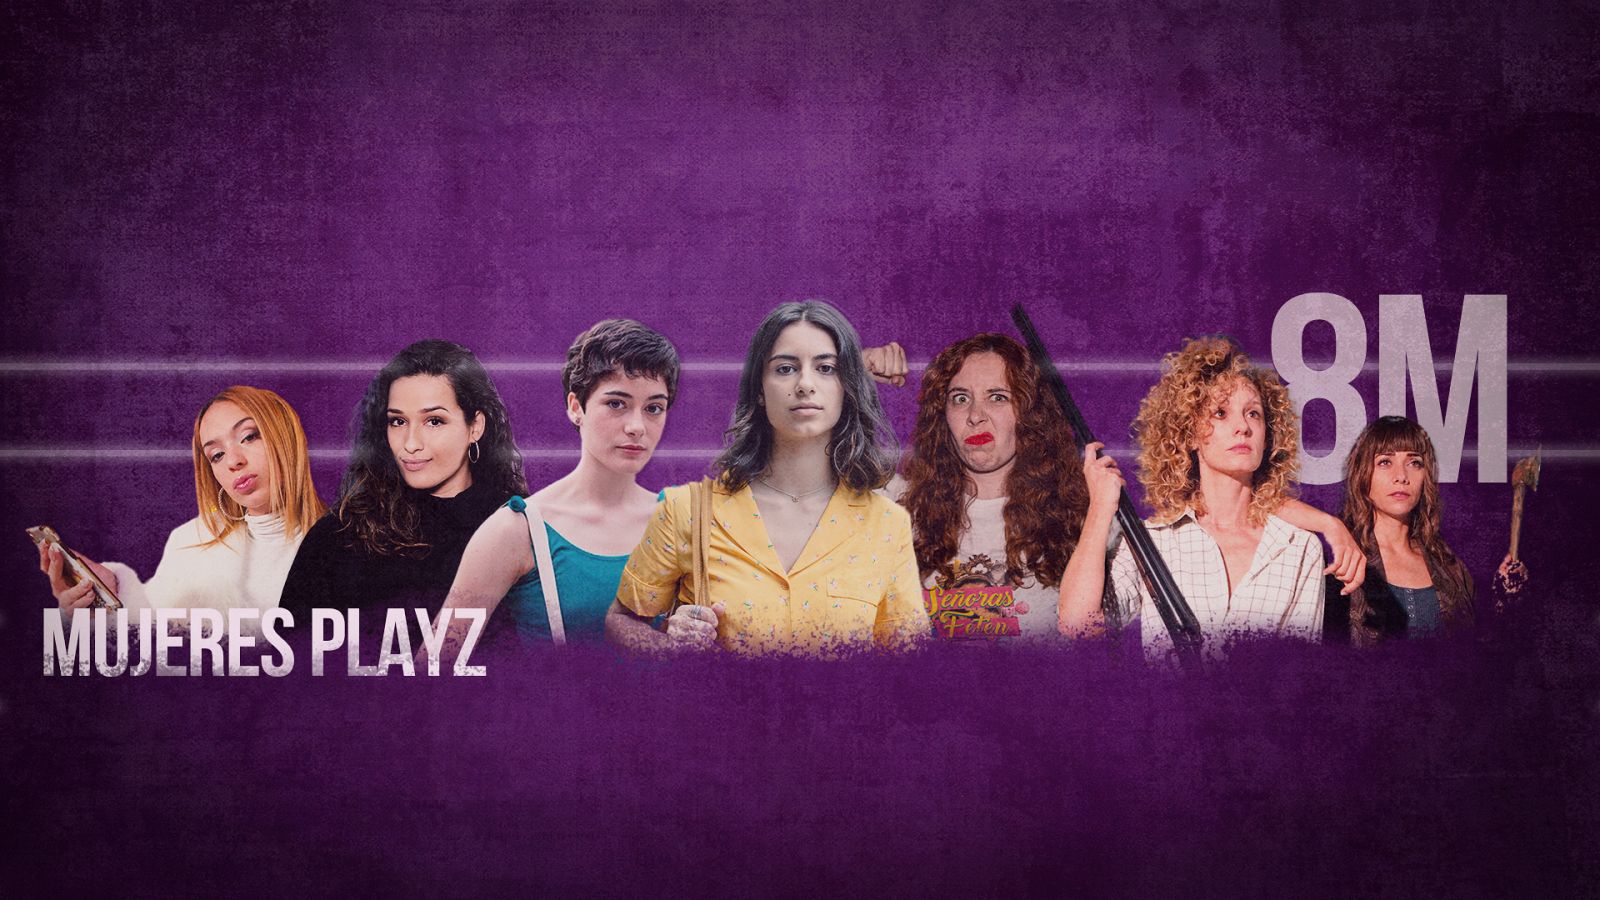 Playz 8M - Los momentos más feministas de las mujeres Playz 